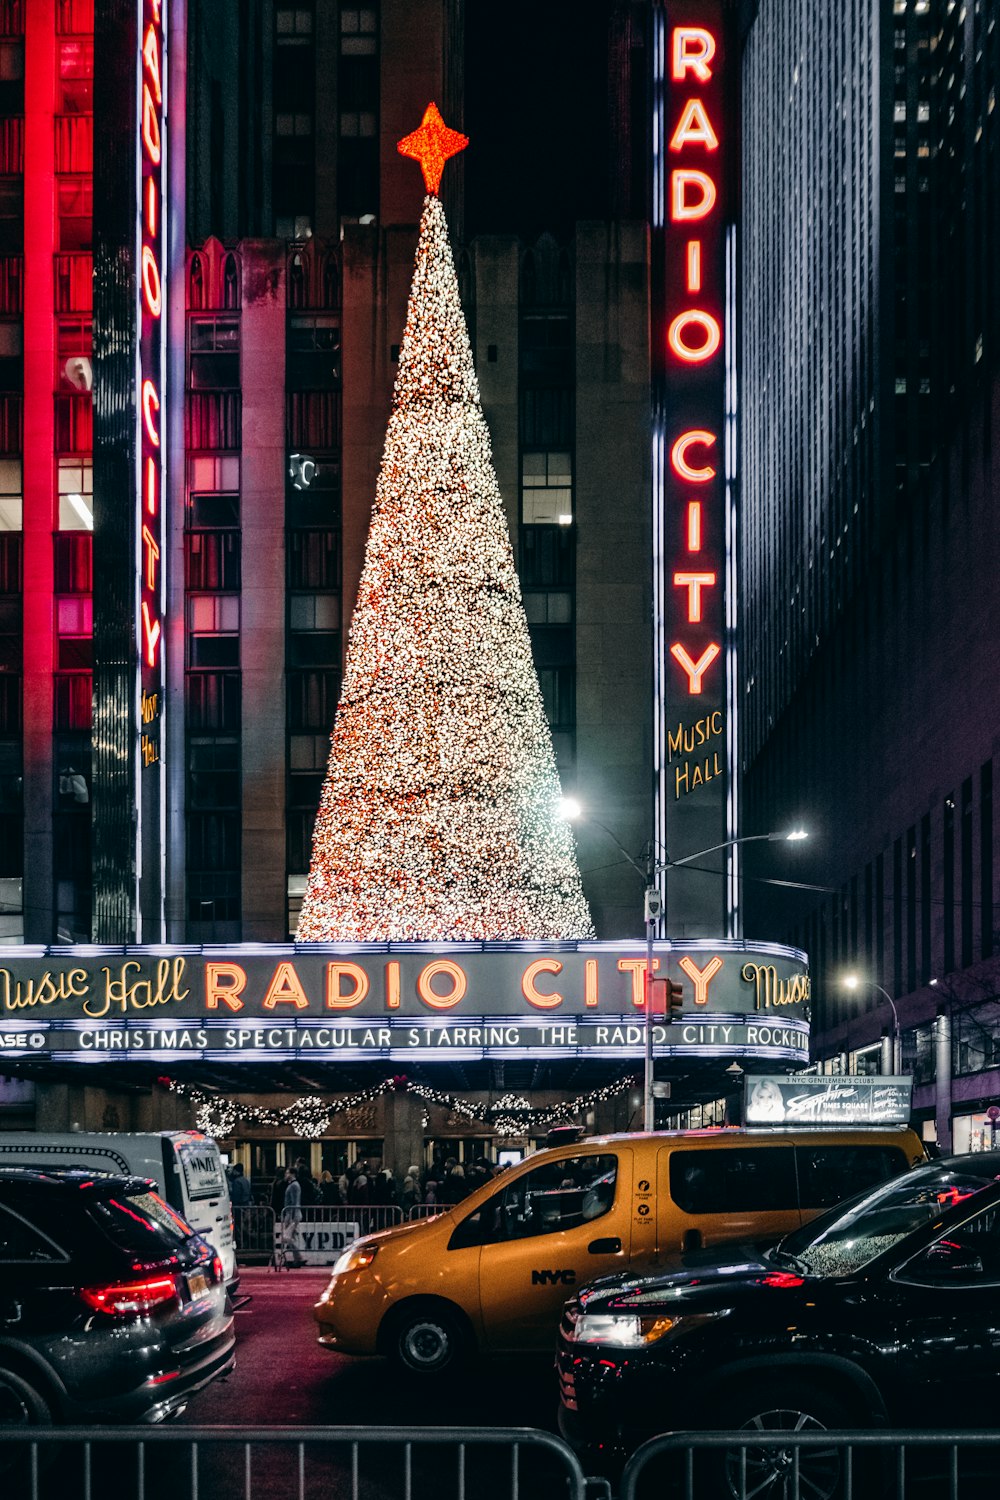 Ein Radiostadt-Weihnachtsbaum mitten in einer Stadt